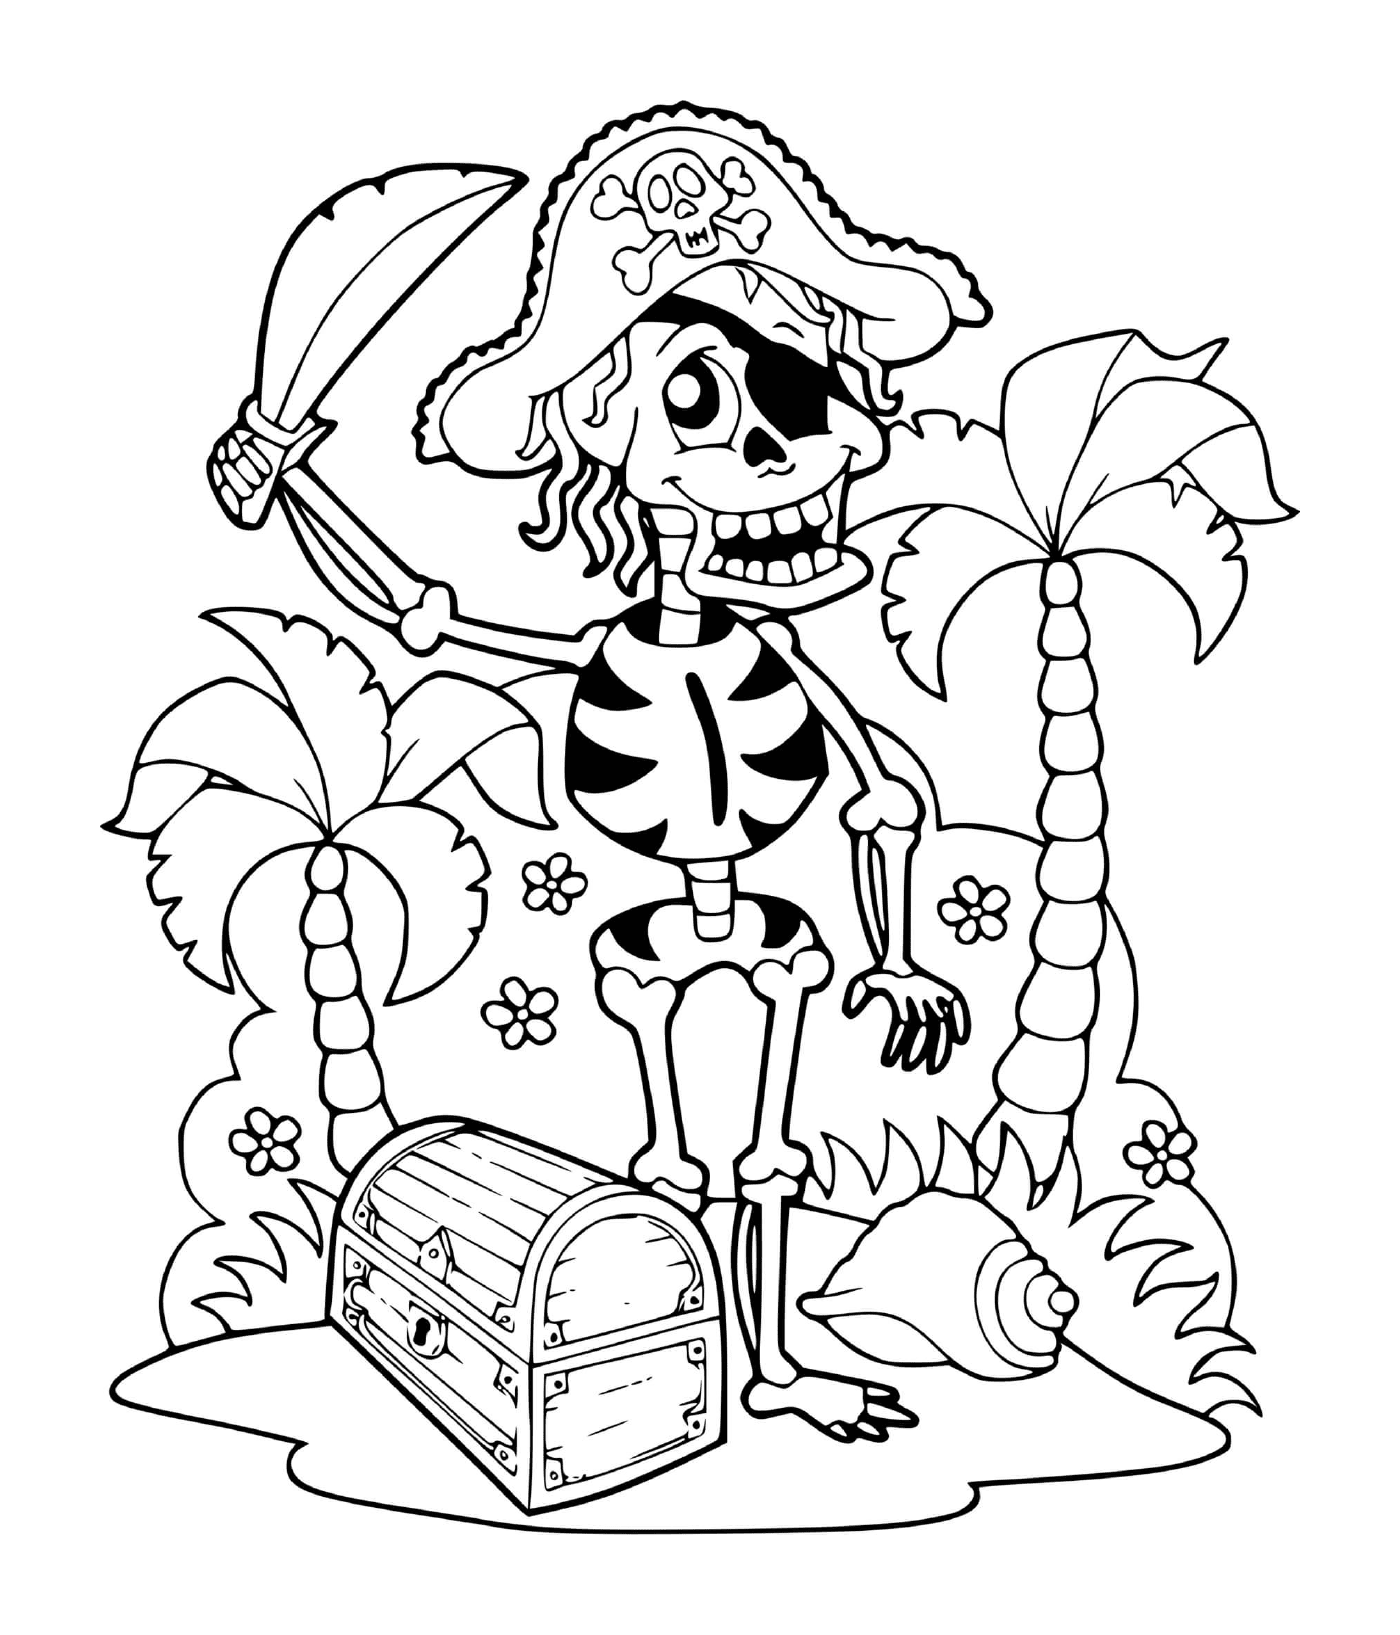  esqueleto pirata com tesouro 